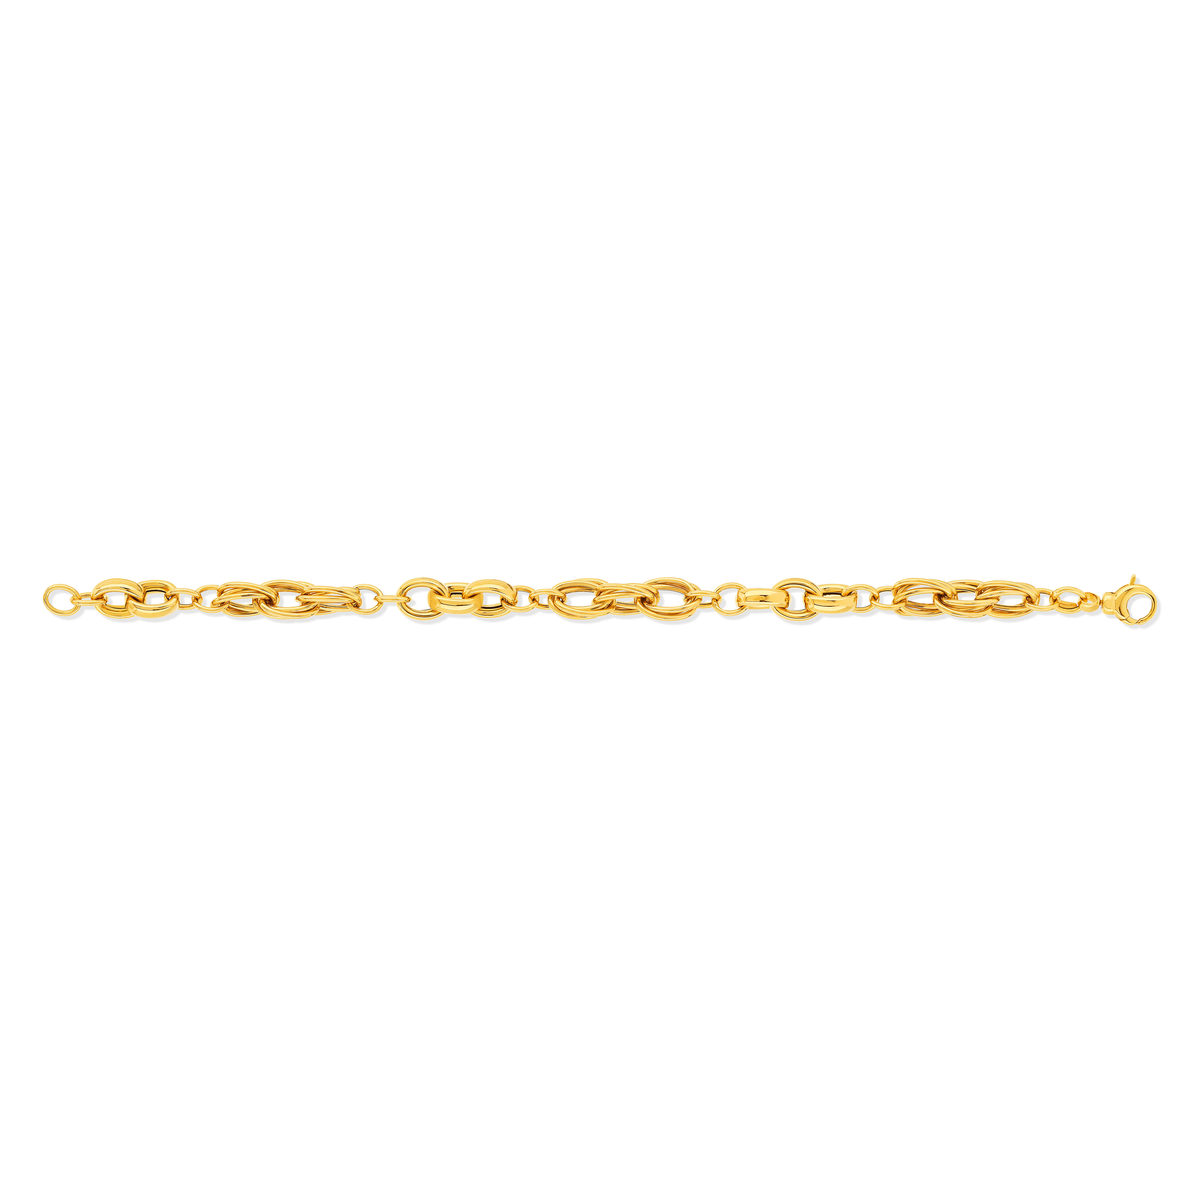 Bracelet or jaune 375 19 cm - vue 2